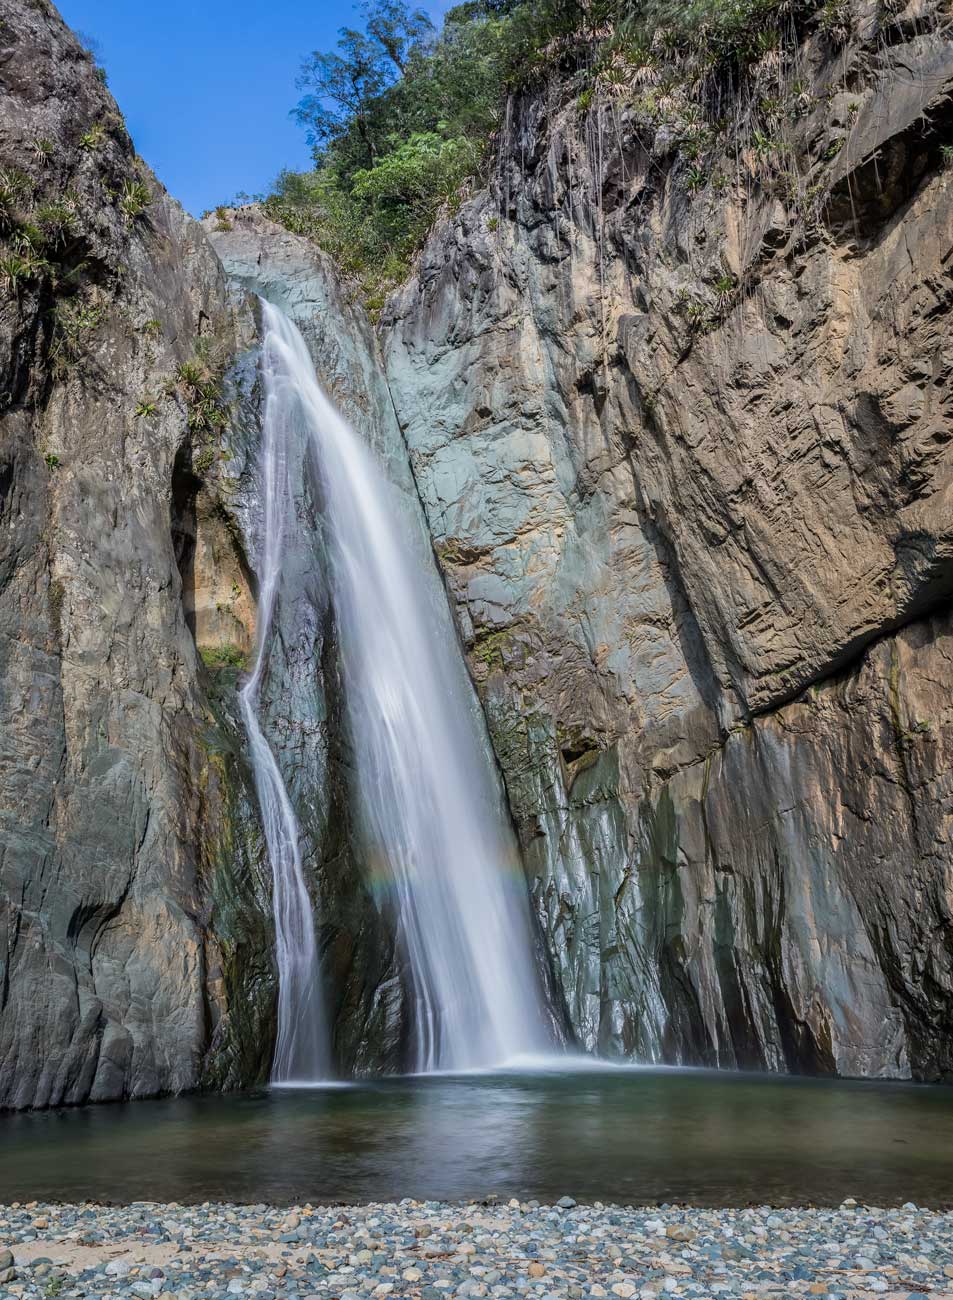 The Jimenoa 1 35 meter waterfall in Jarabacoa.